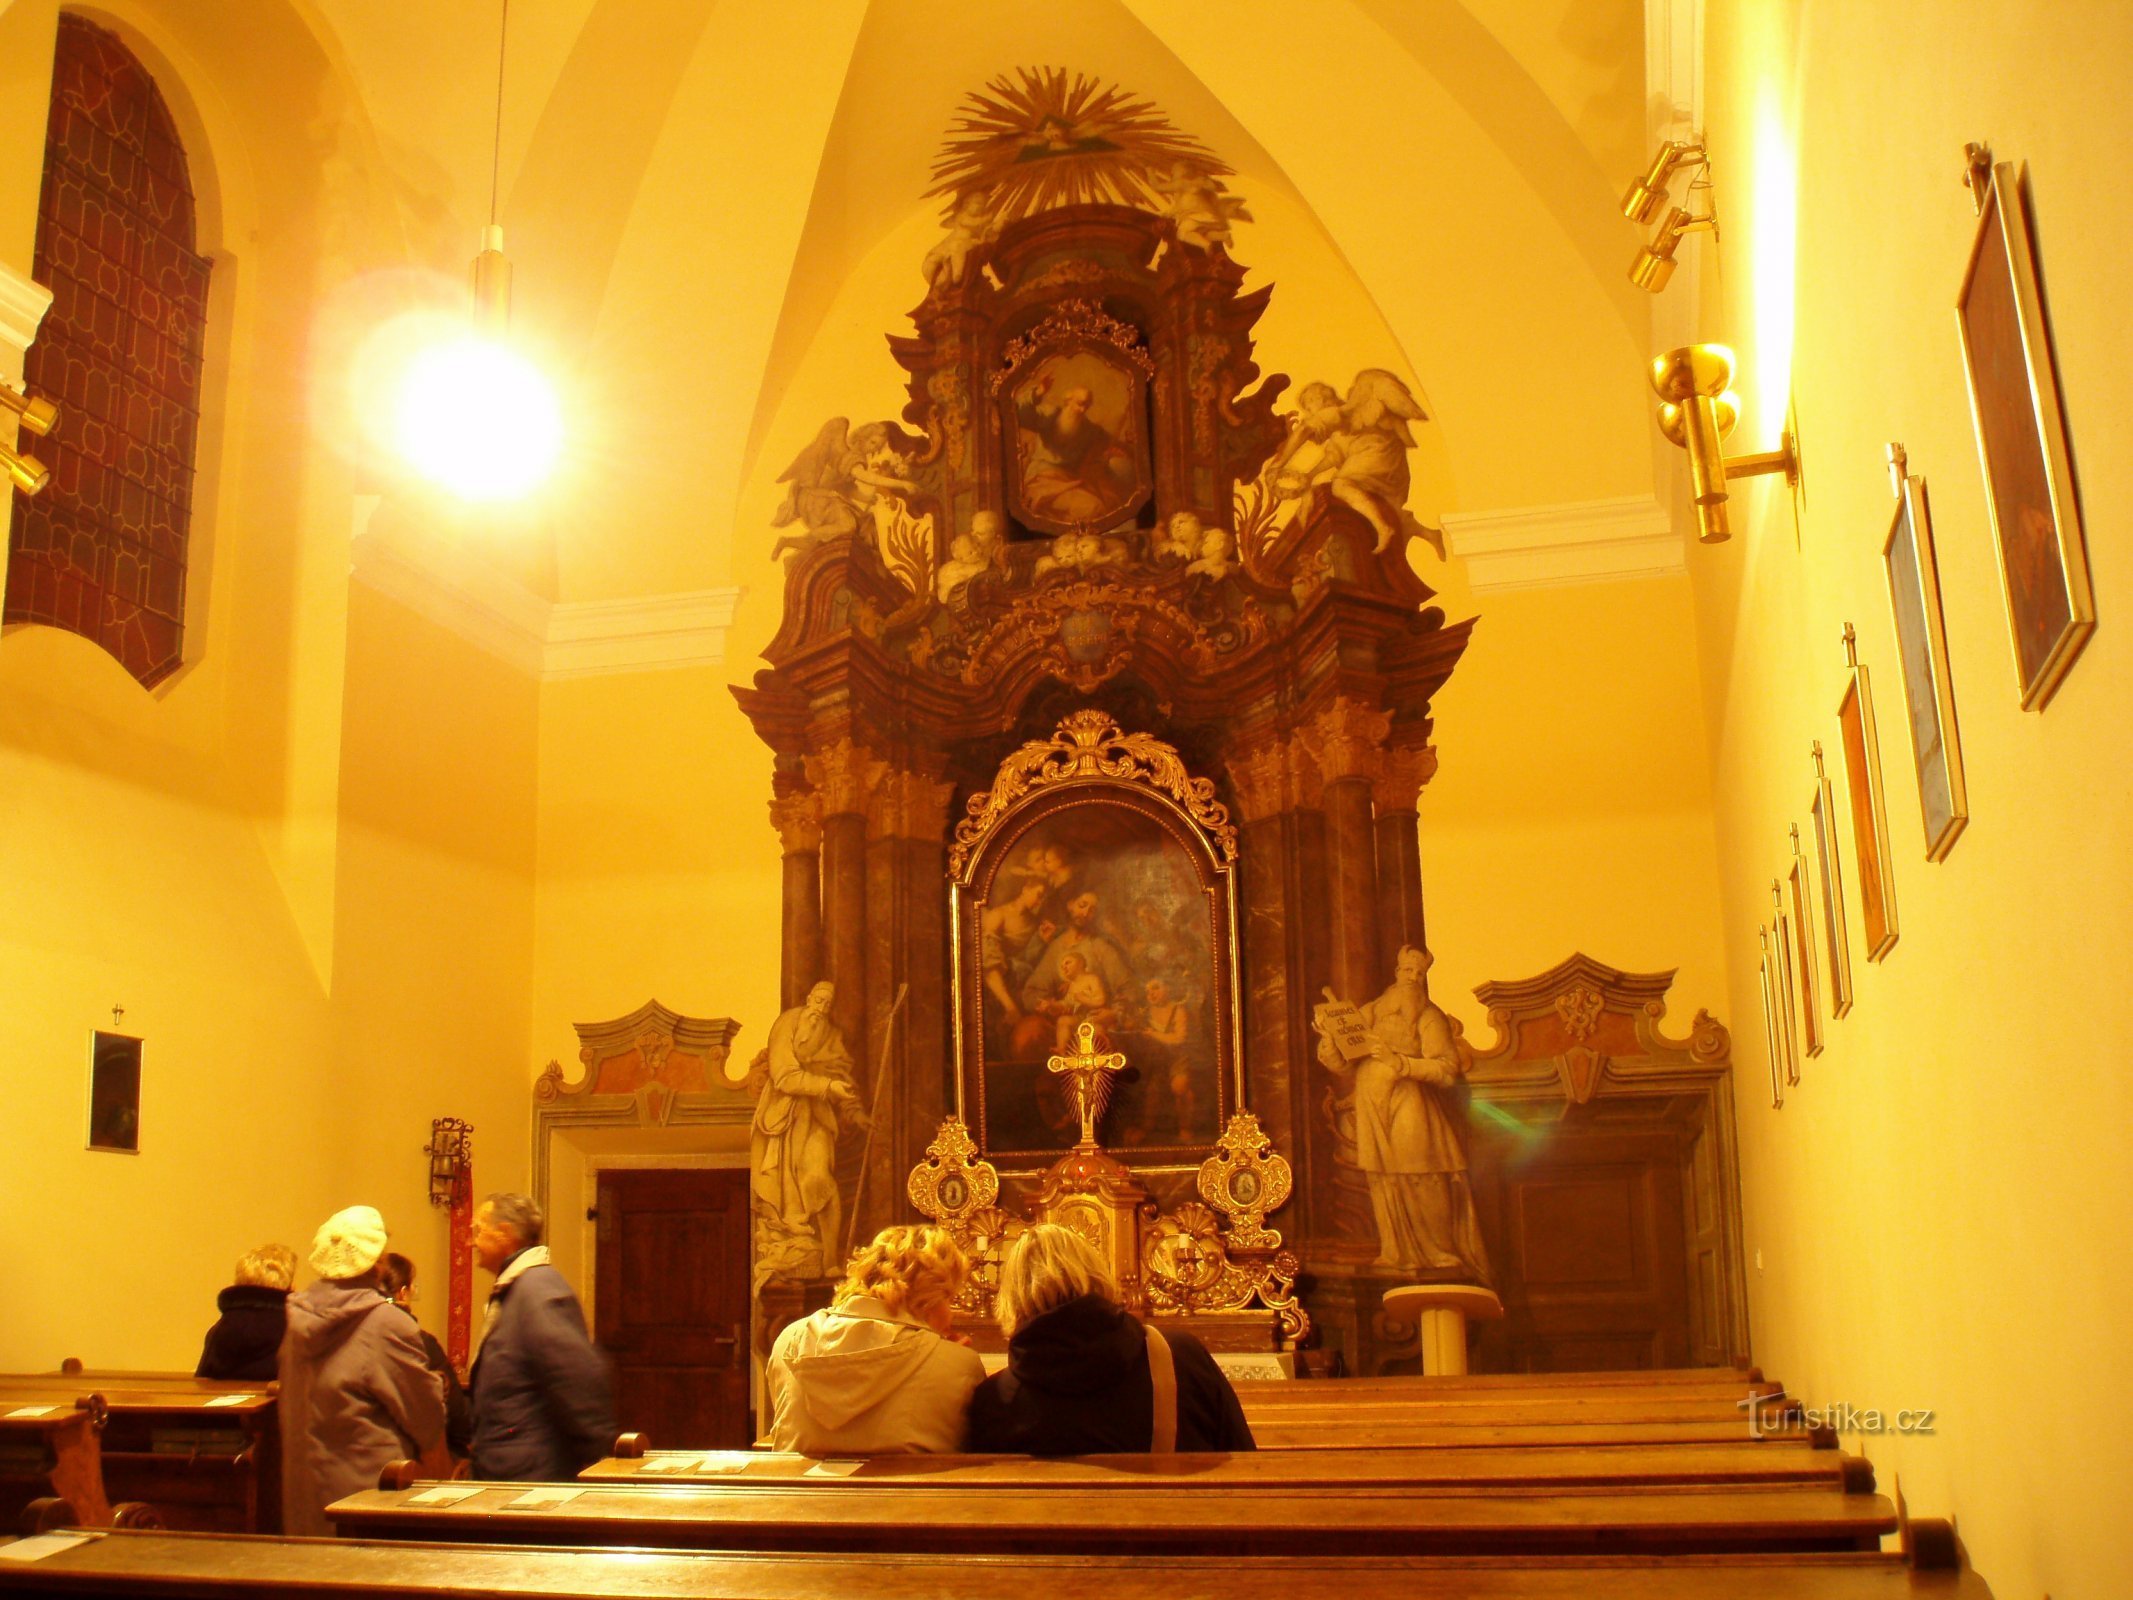 Interior of the chapel of St. Josefa (Hradec Králové, 19.3.2010)